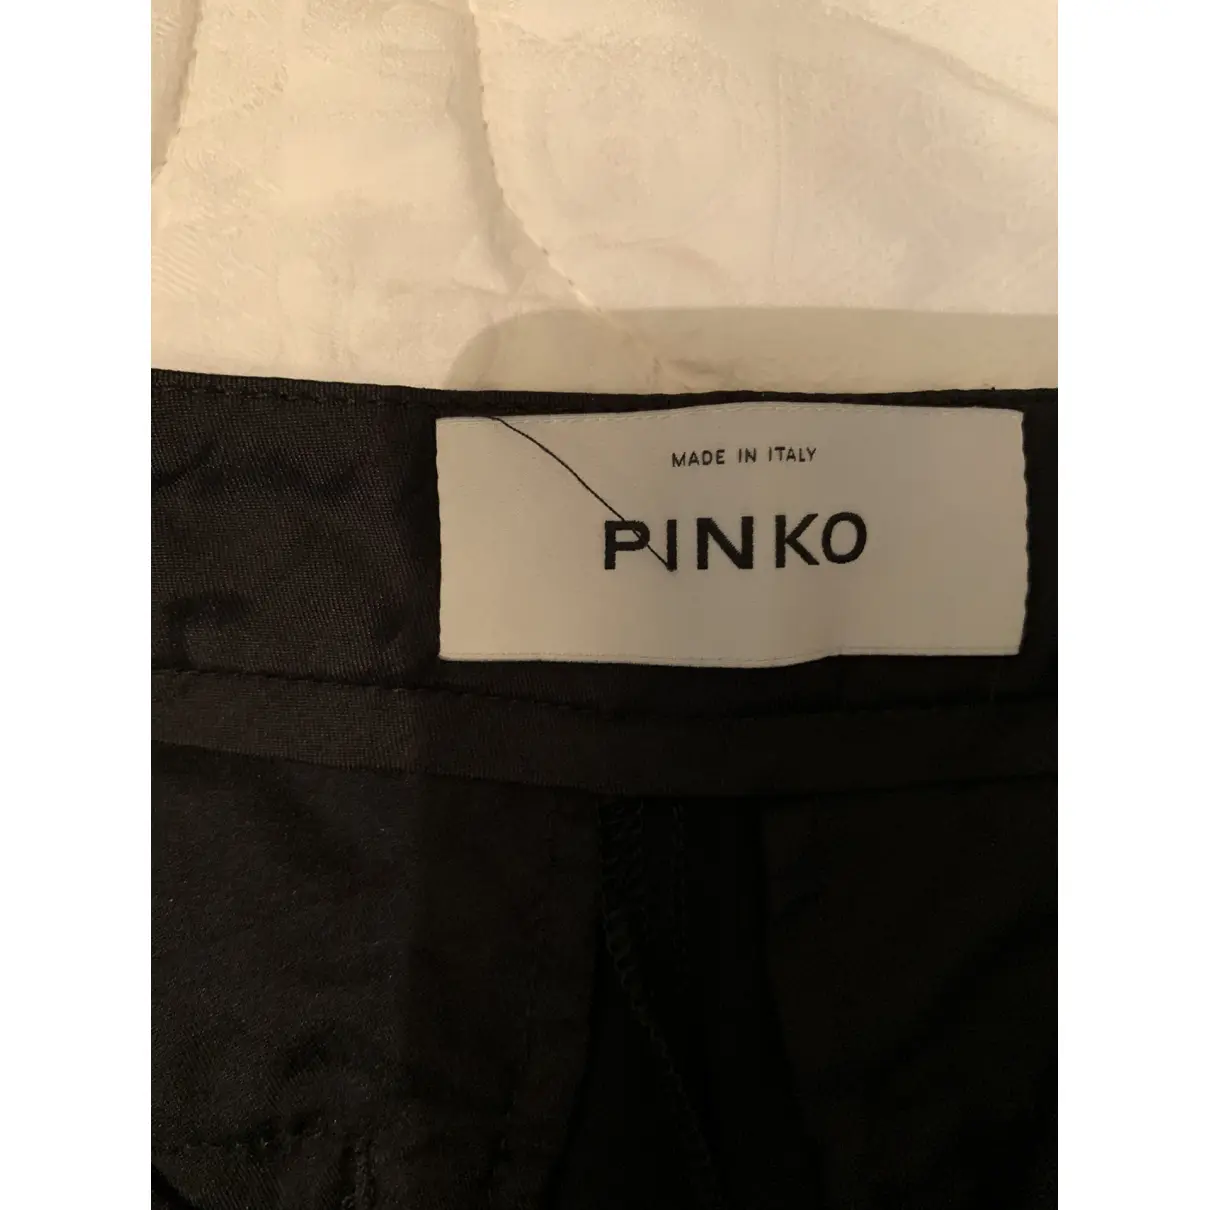 Large pants Pinko